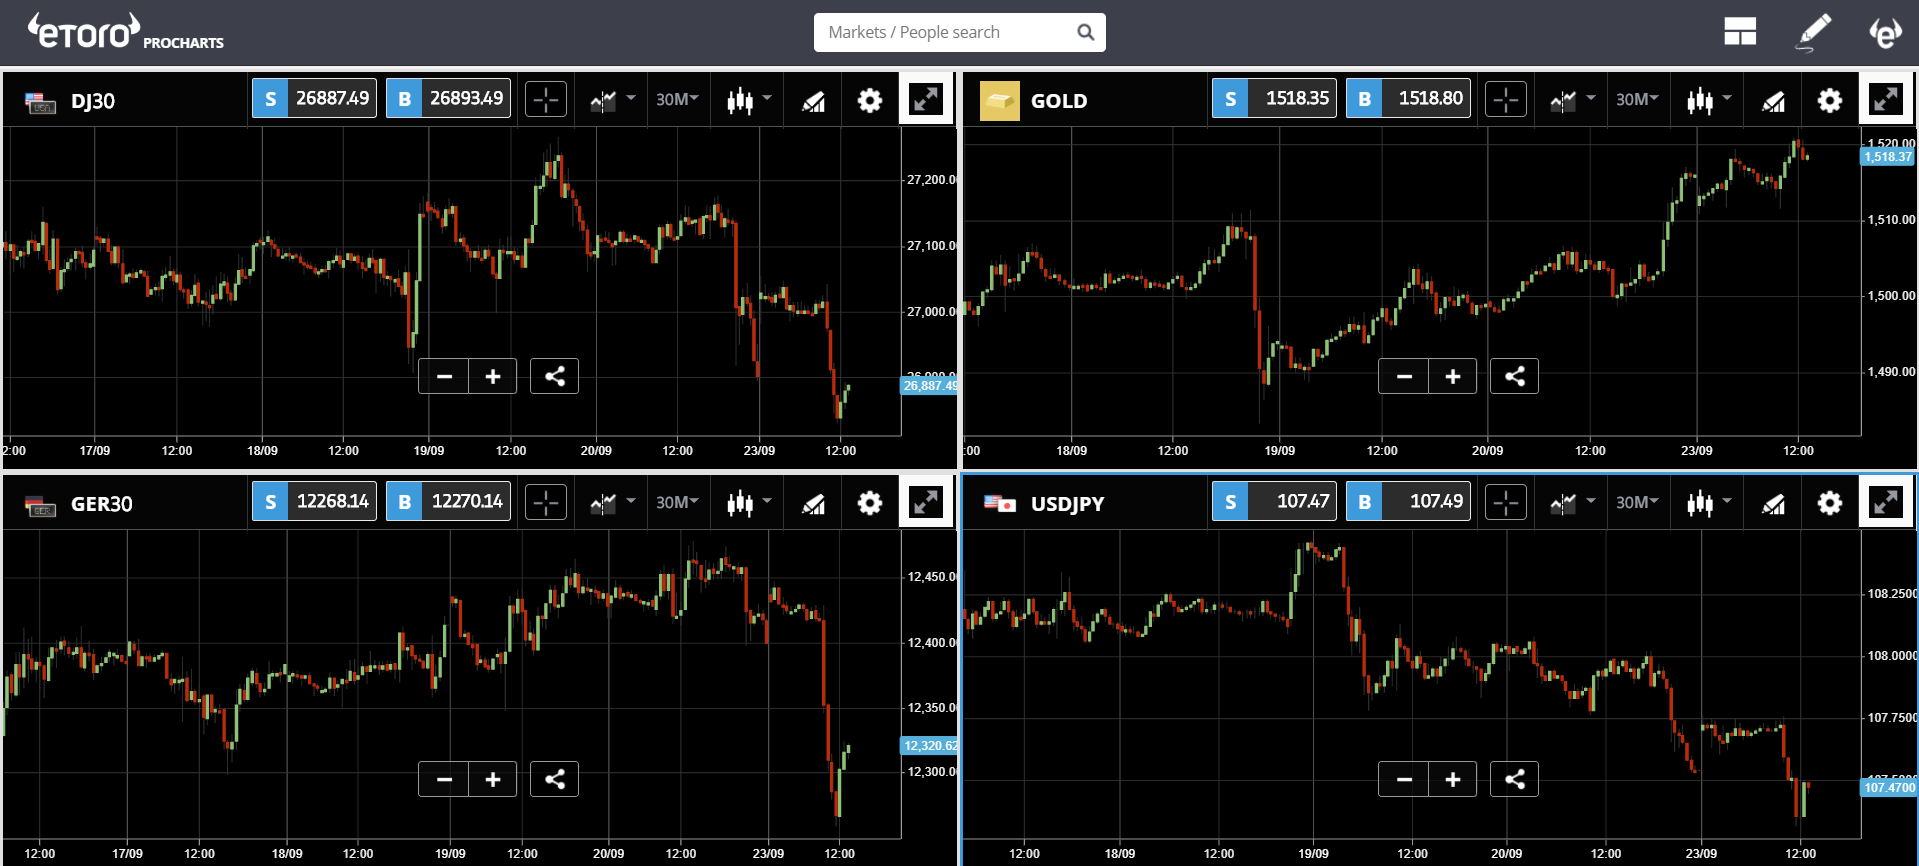 market, crypto, euro, arctic korea, bitcoin